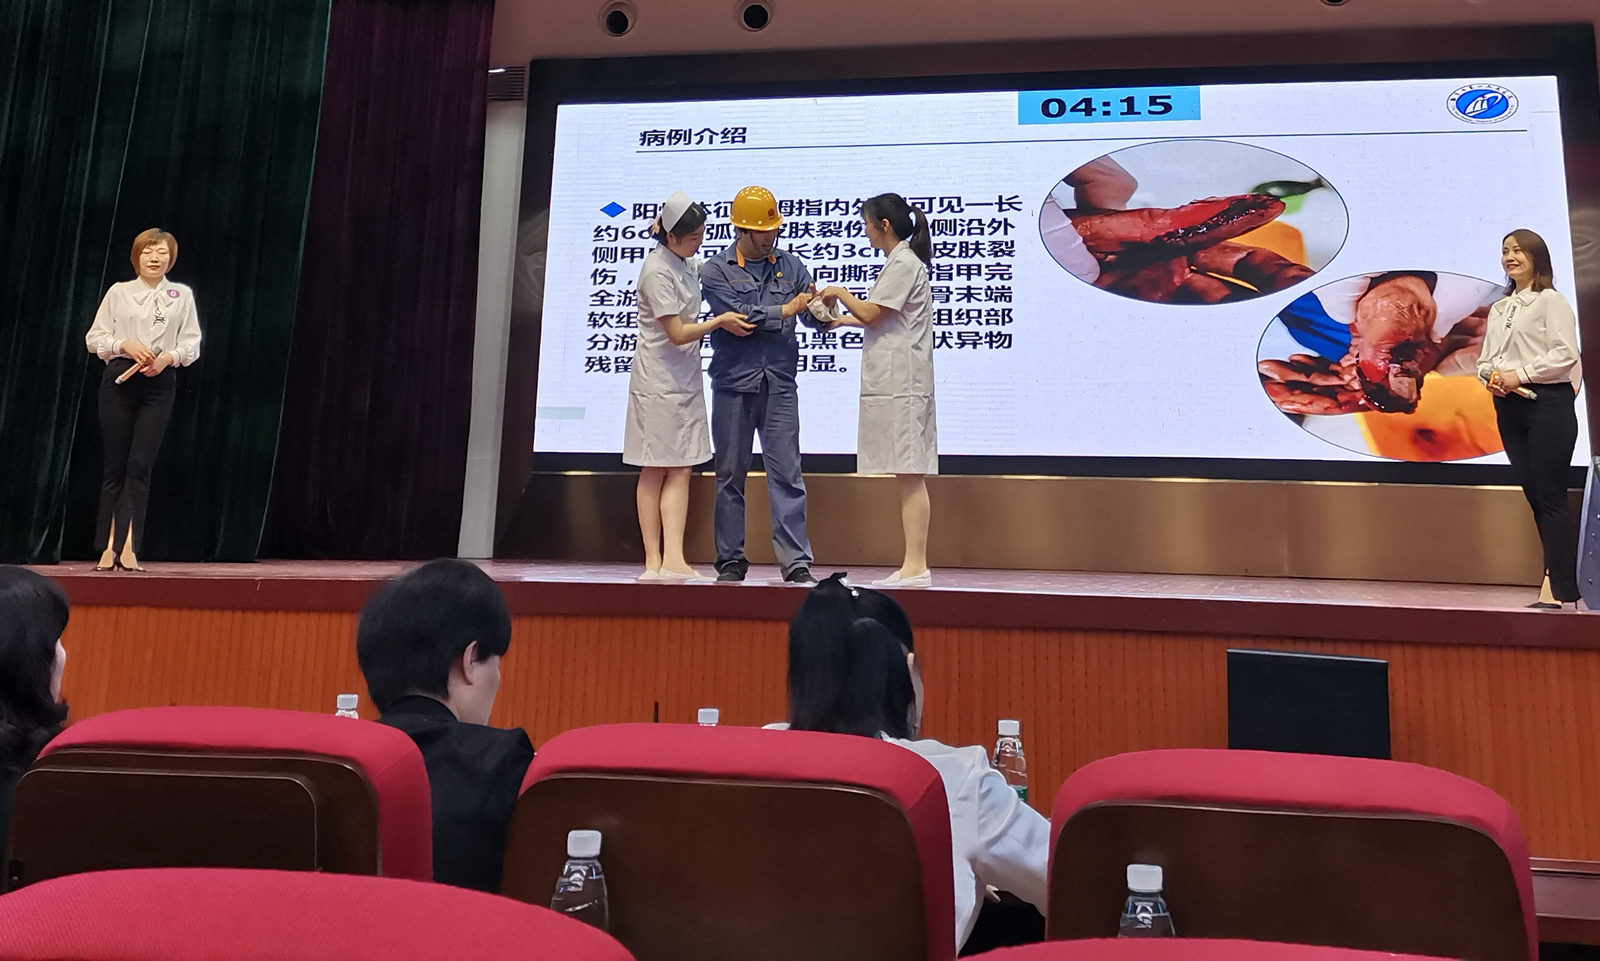 湘潭市第一人民医院骨科为获奖人员举办励志活动